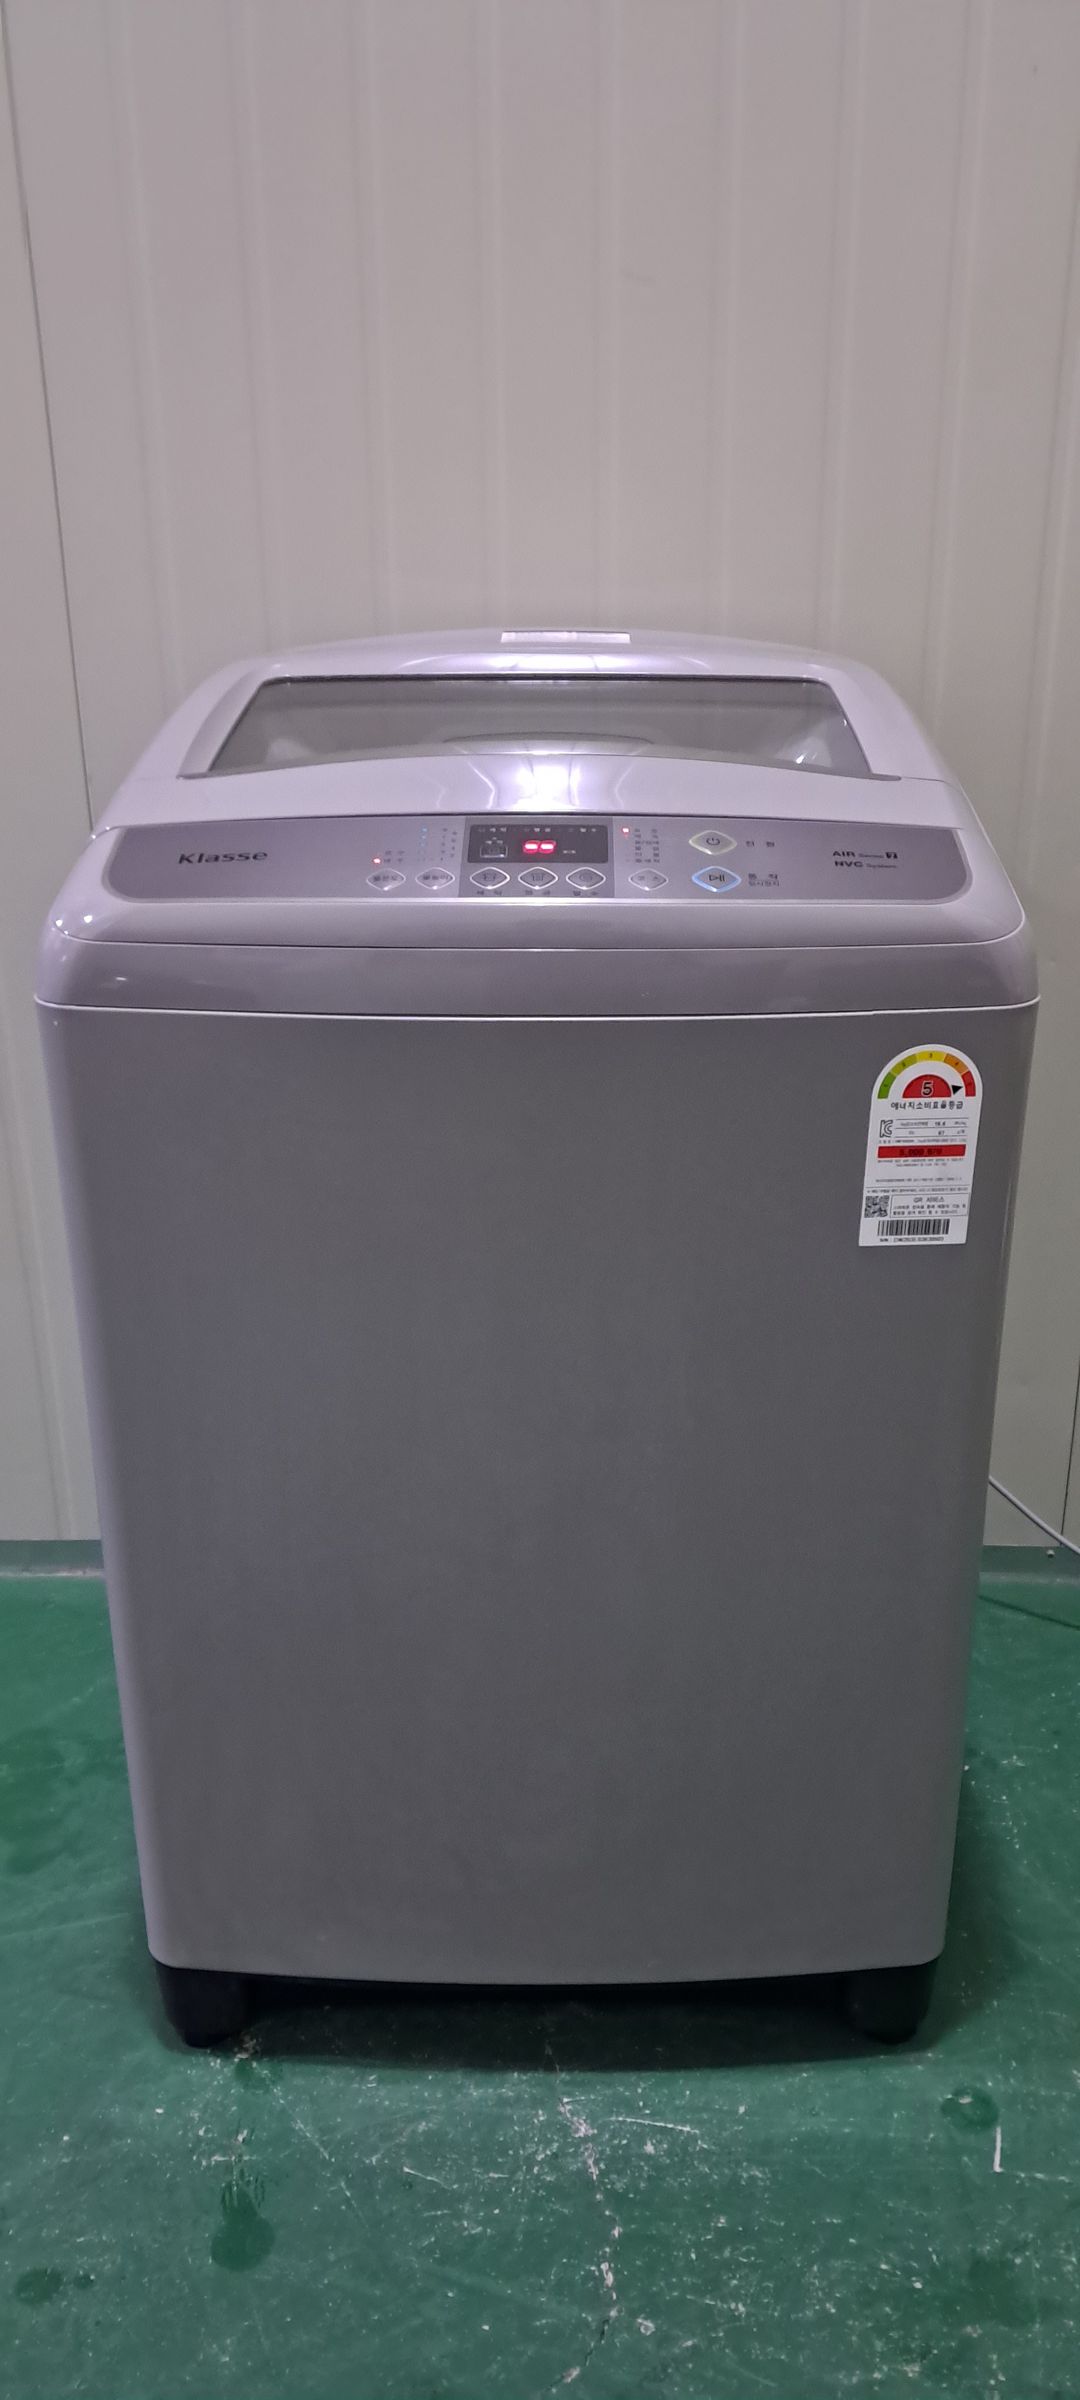 2487 대우클라쎄 15KG 통돌이세탁기(메탈그레이)